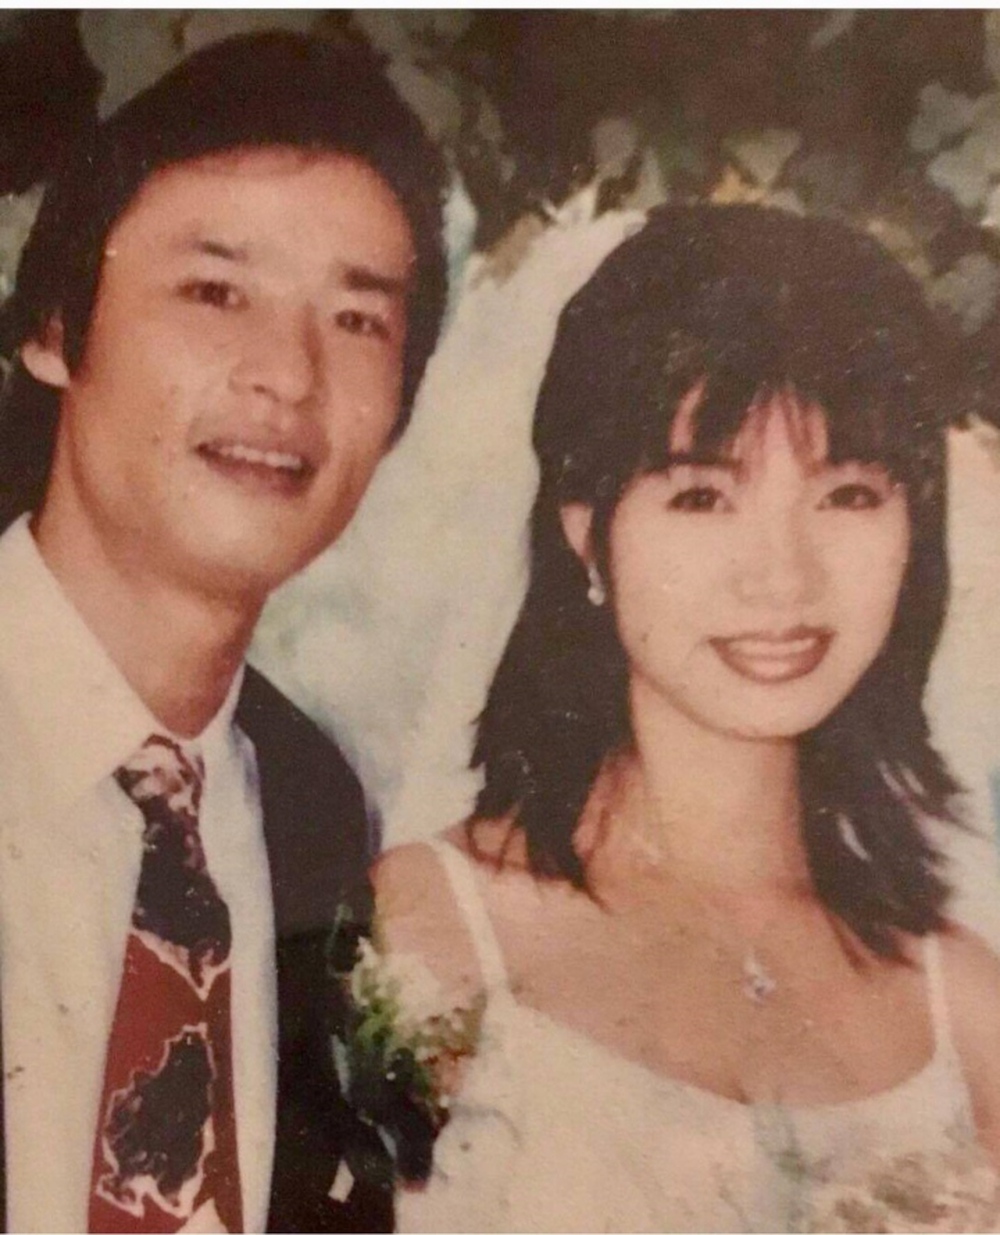 NSƯT Võ Hoài Nam khoe loạt ảnh cưới hơn 20 năm trước với bà xã kém 12 tuổi - Ảnh 1.